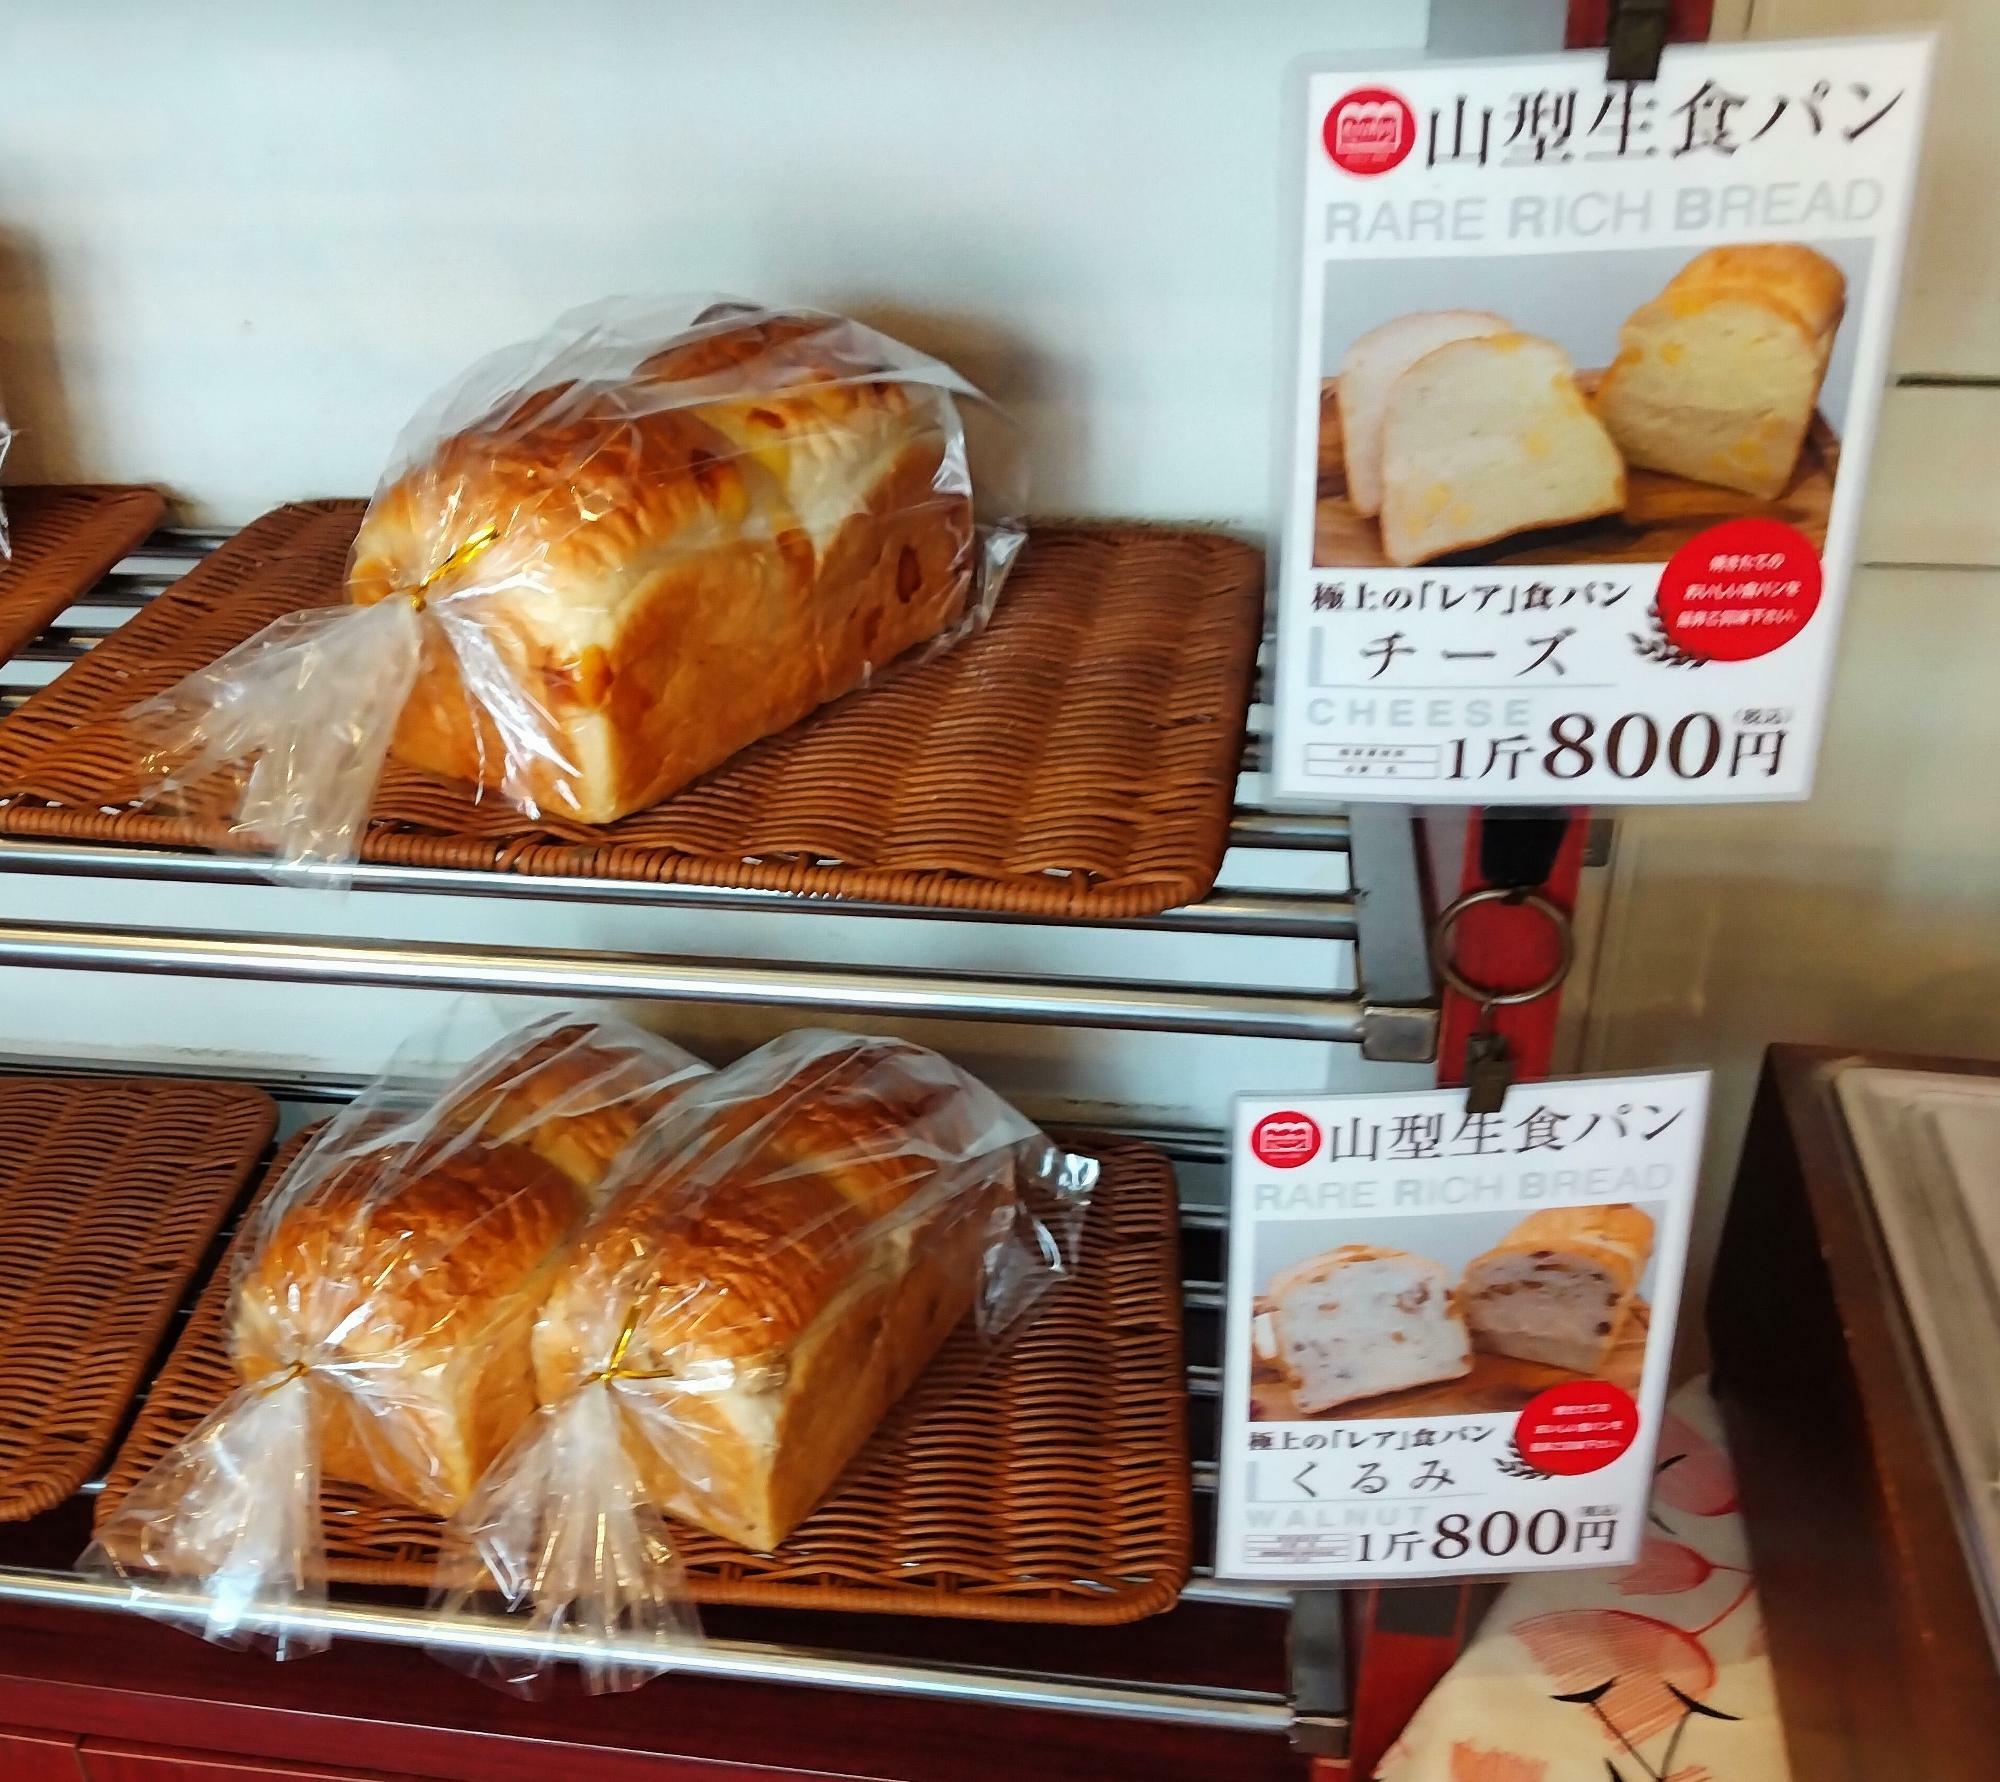 「レアリッチ　西中島本店」の生食パンは山型。